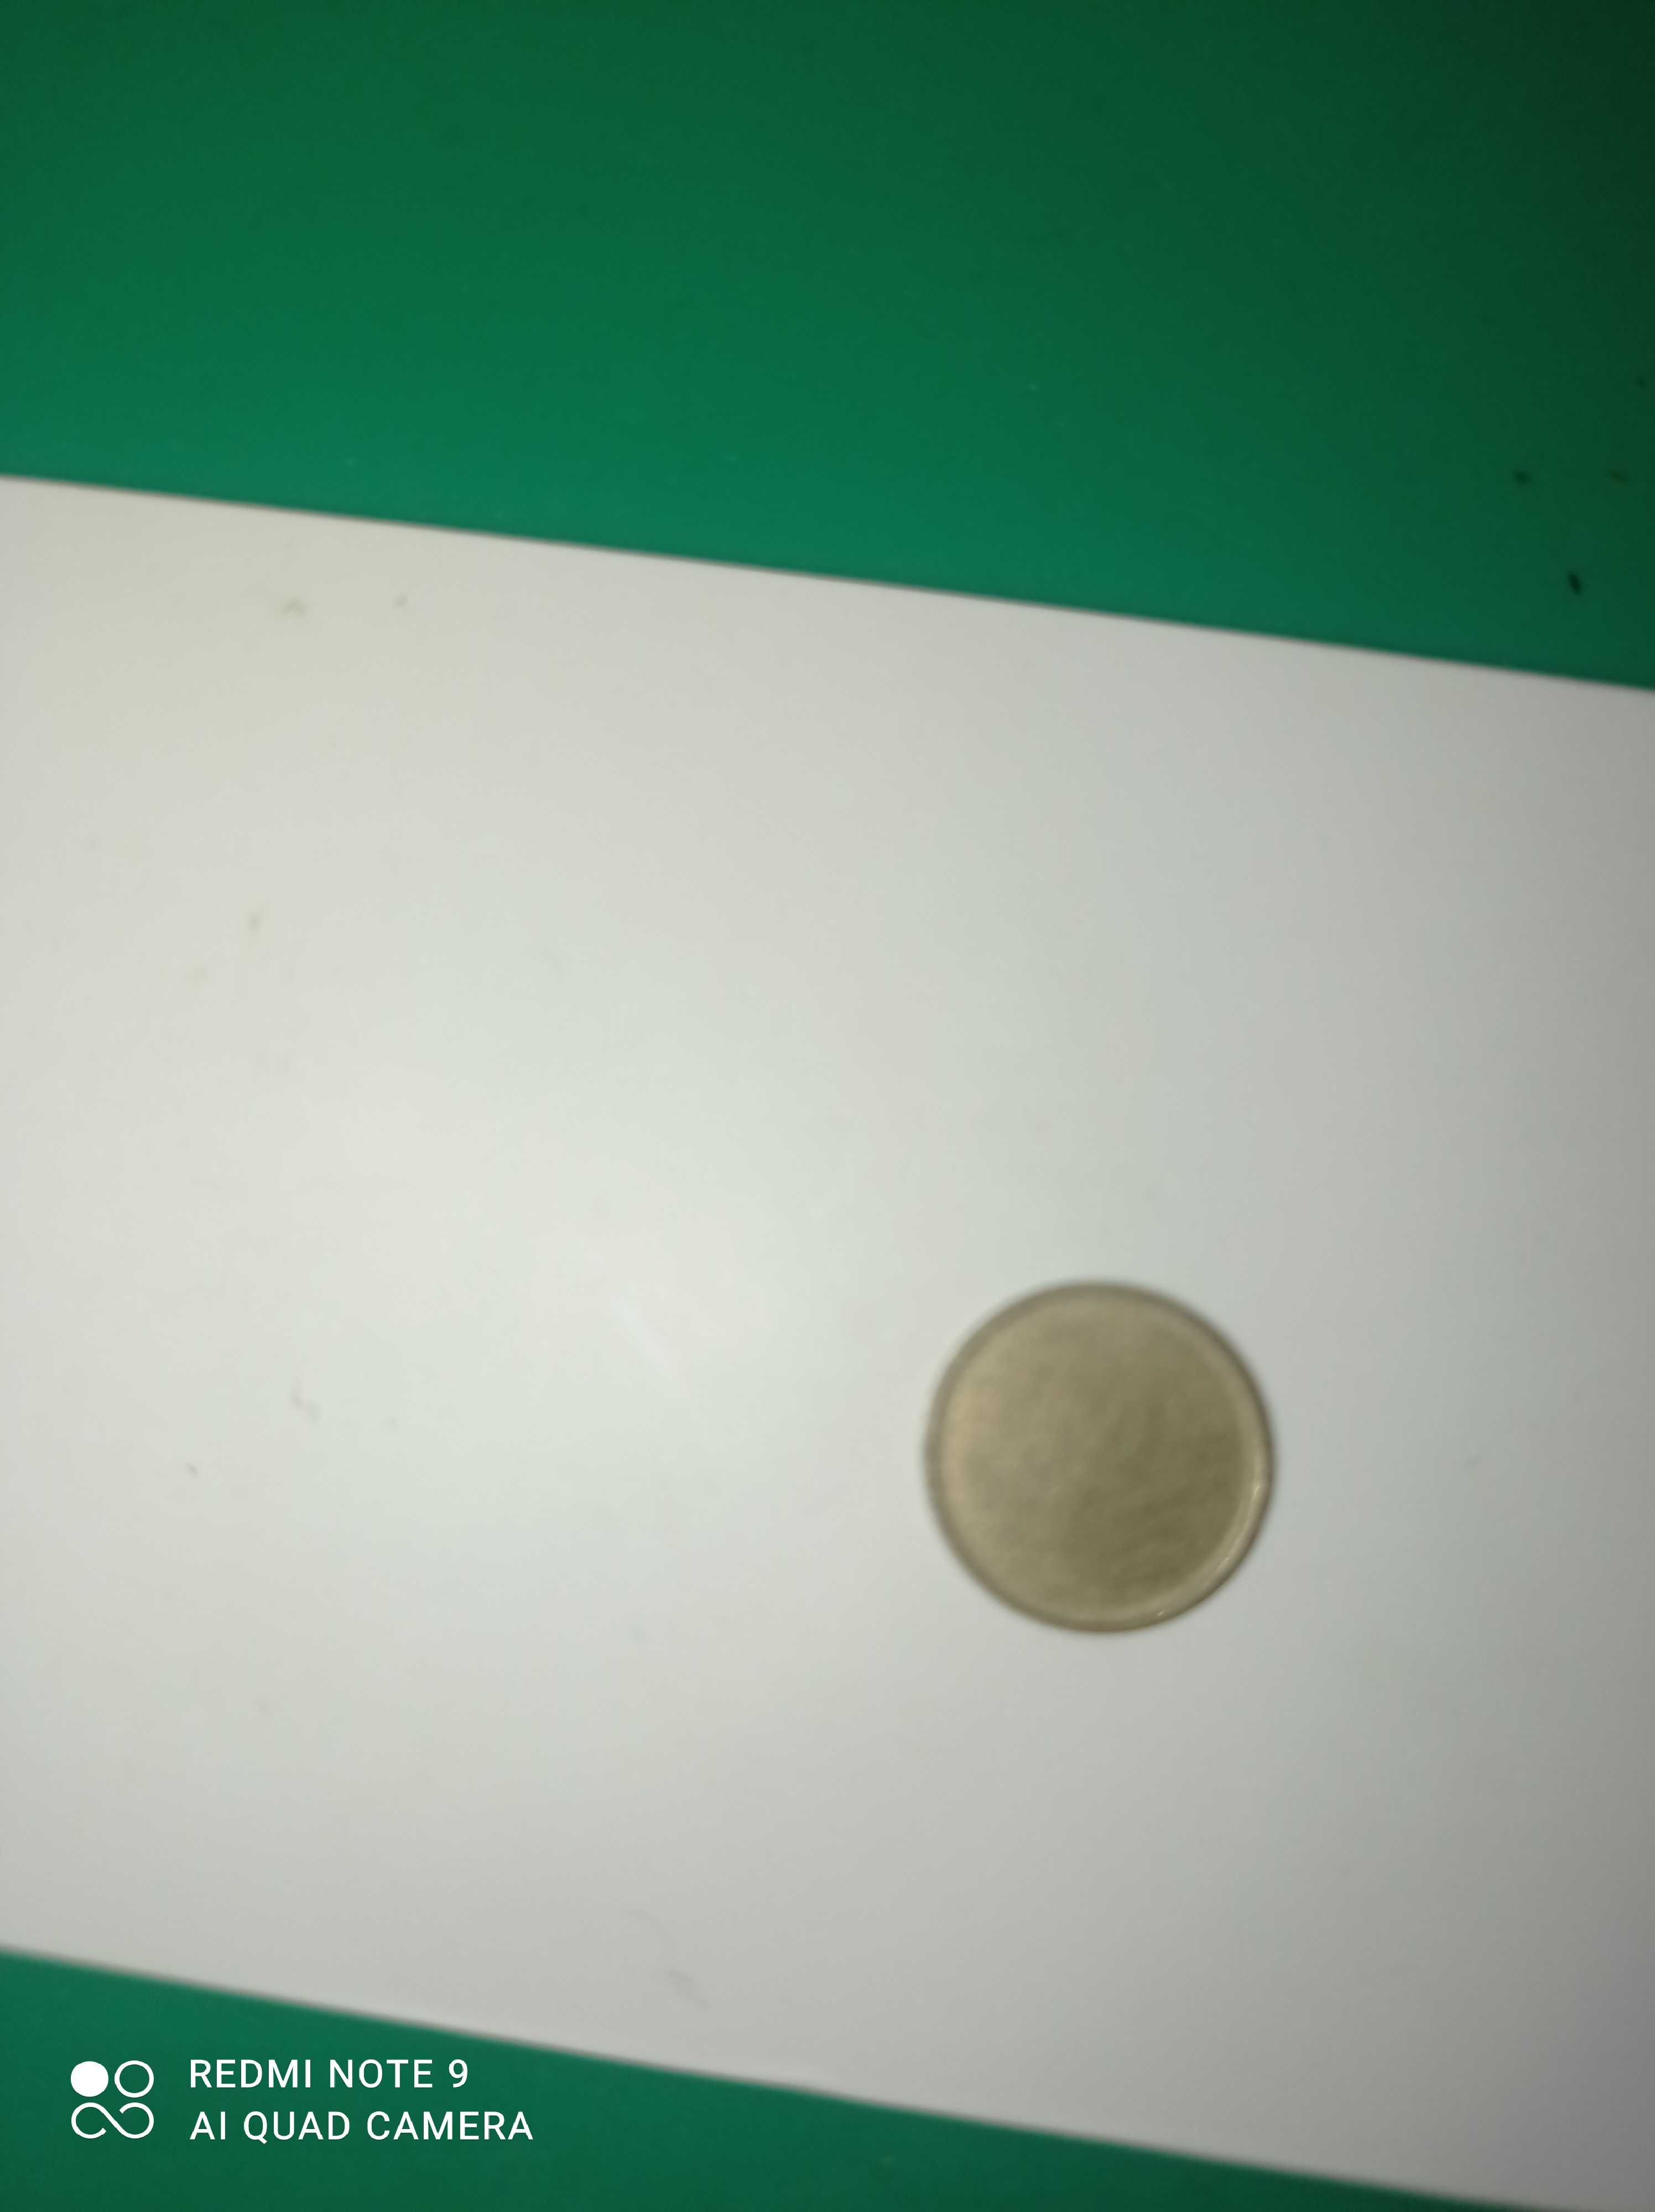 10 копійок брак чіканки (монета)